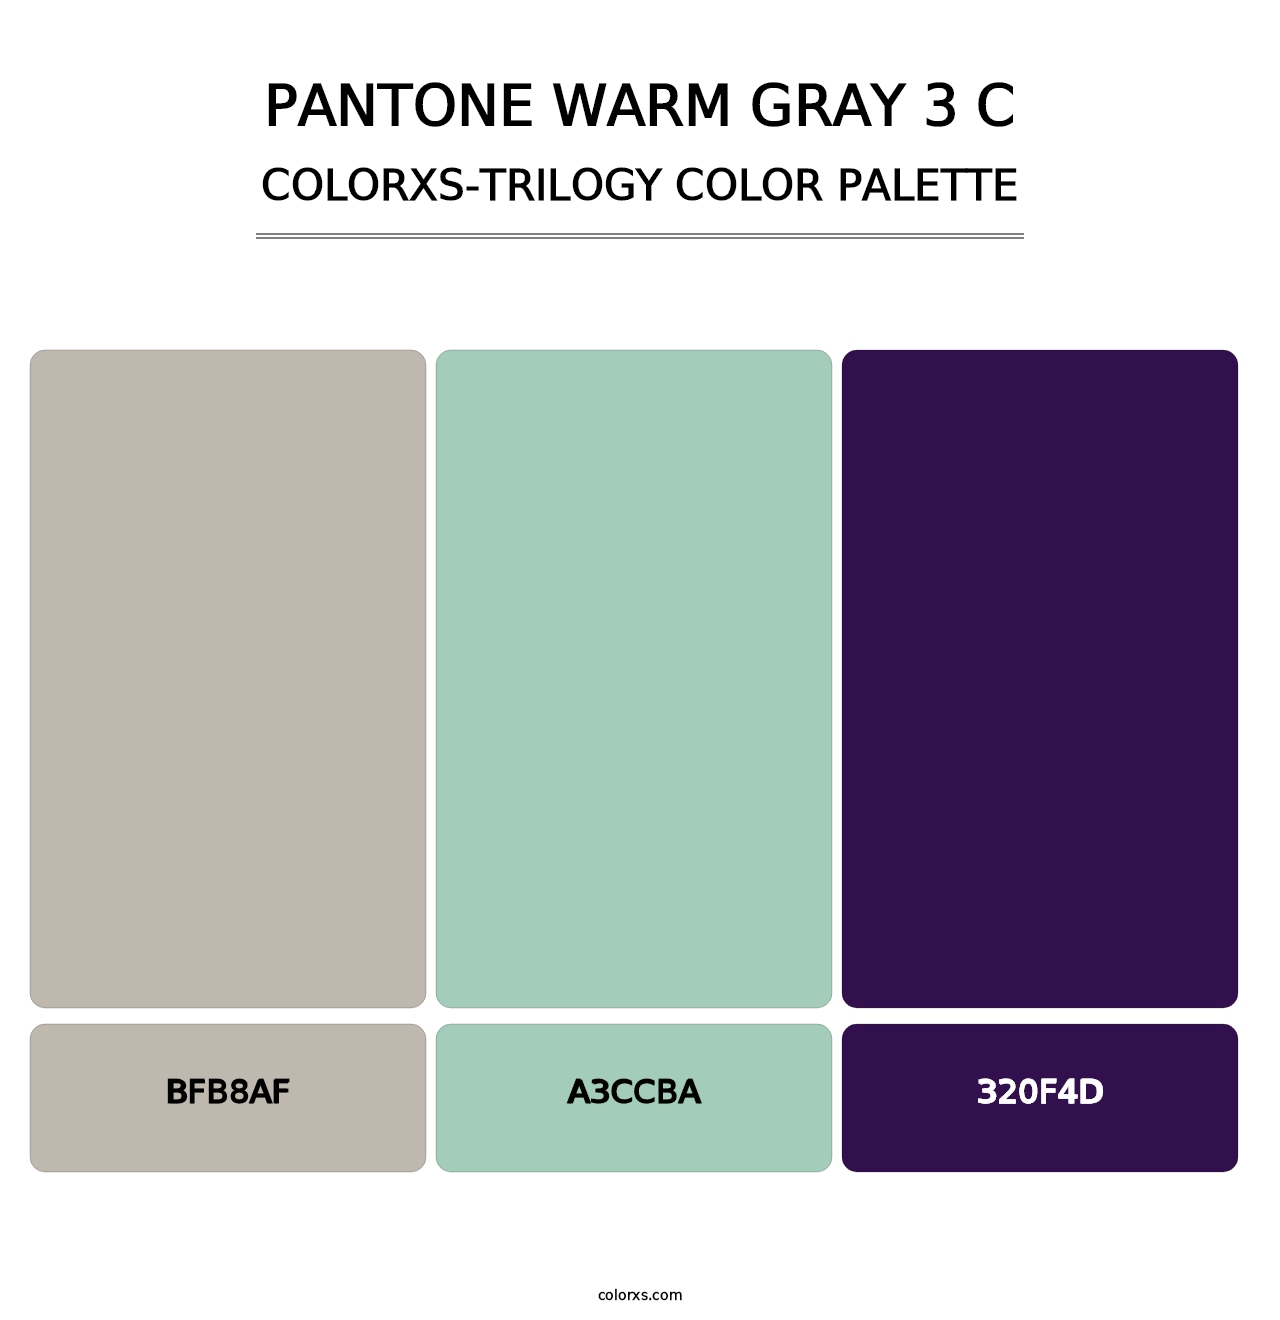 PANTONE Warm Gray 3 C - Colorxs Trilogy Palette